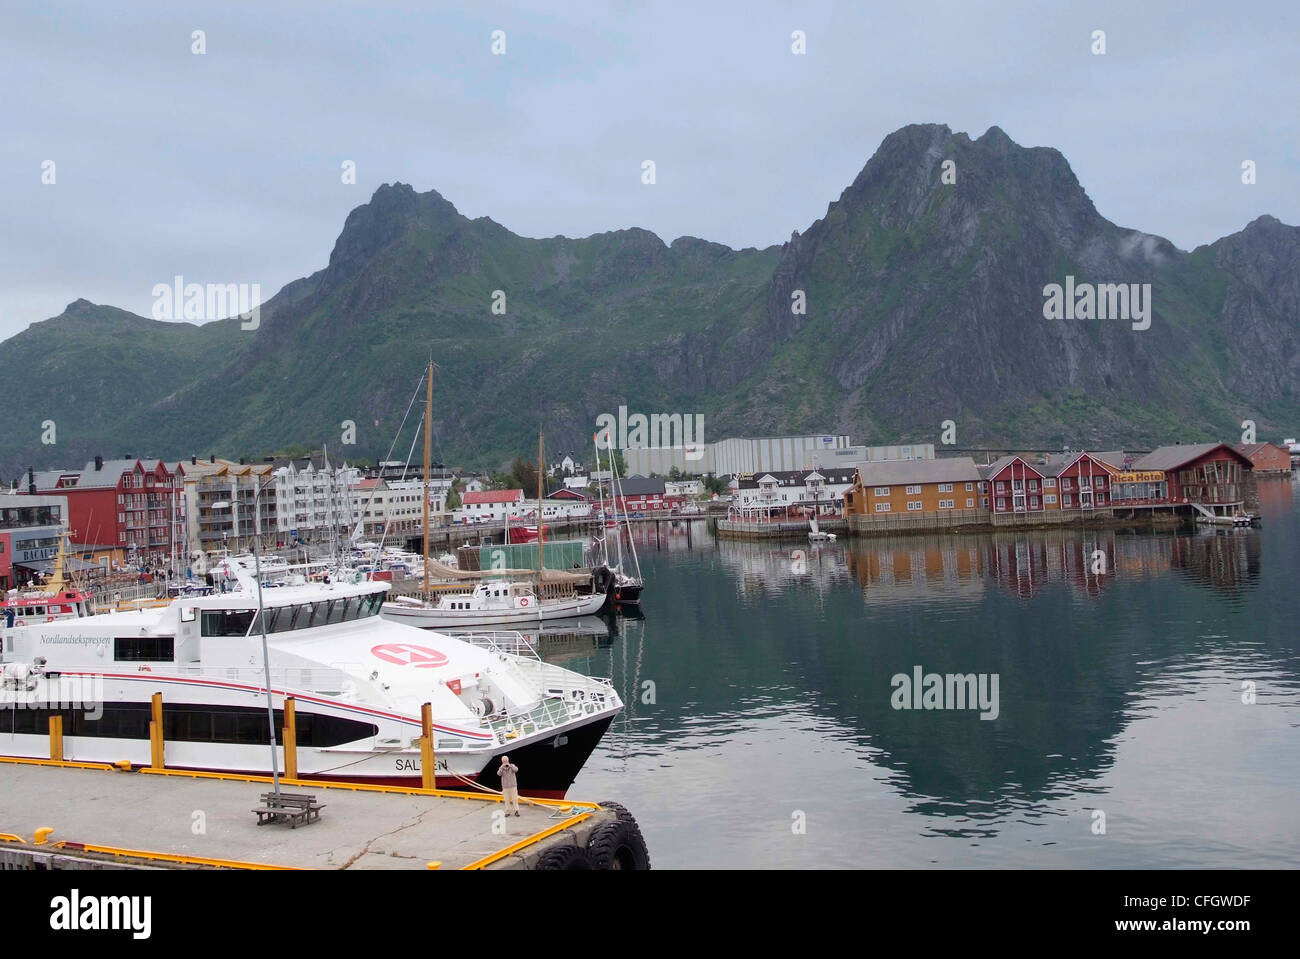 Norwegen-LOFOTEN-Inseln Svolvaer - die Inselgruppe Hauptstadt Katamaran-Schnellfähre im Vordergrund Stockfoto